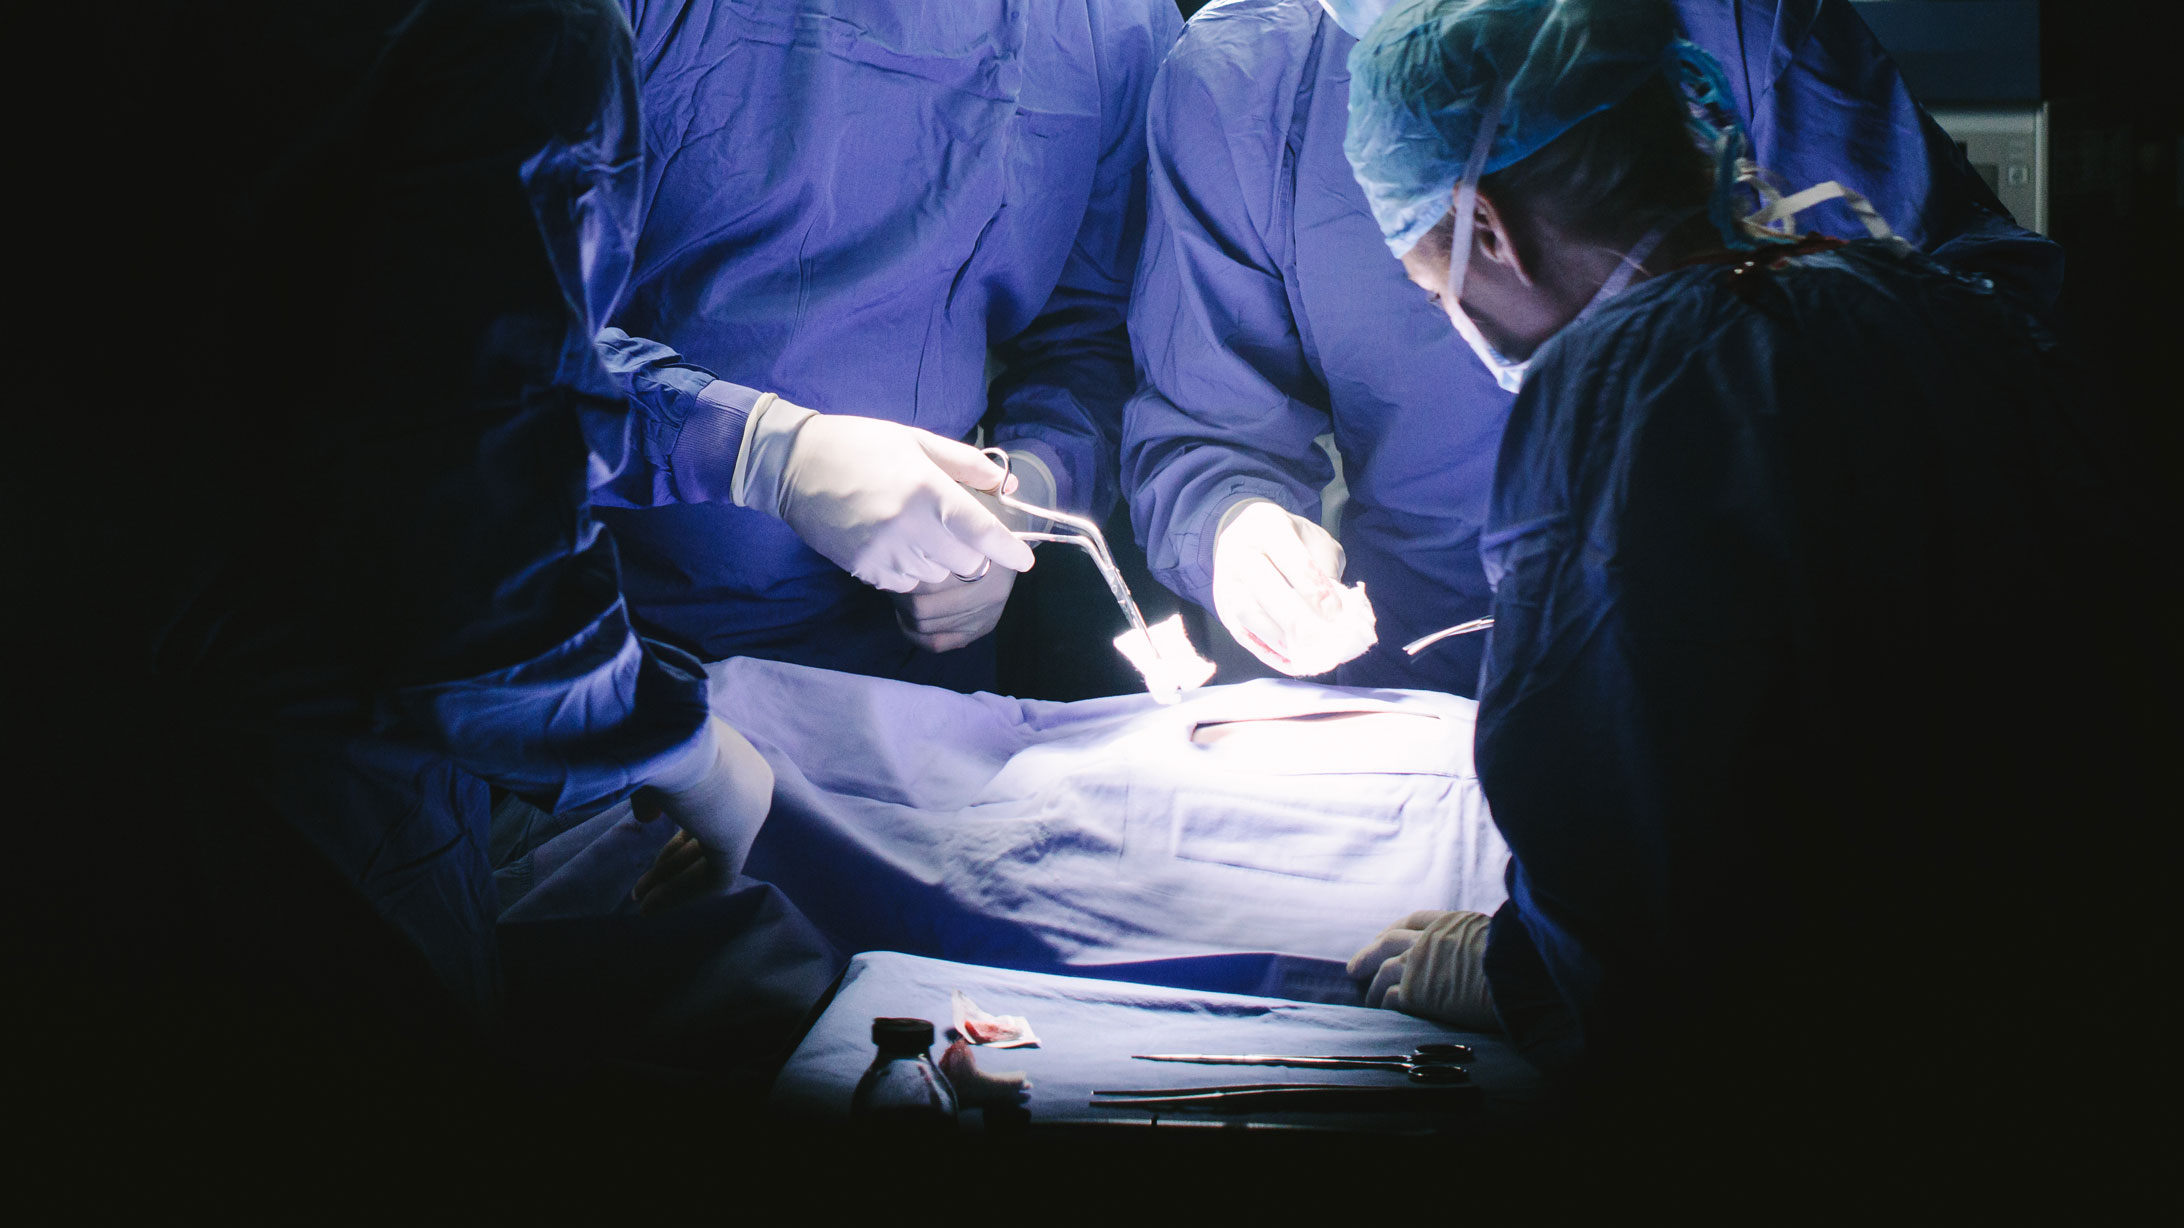 Szene aus der Viszeralchirurgie: Chirurgen im Operationssaal bei der Arbeit.